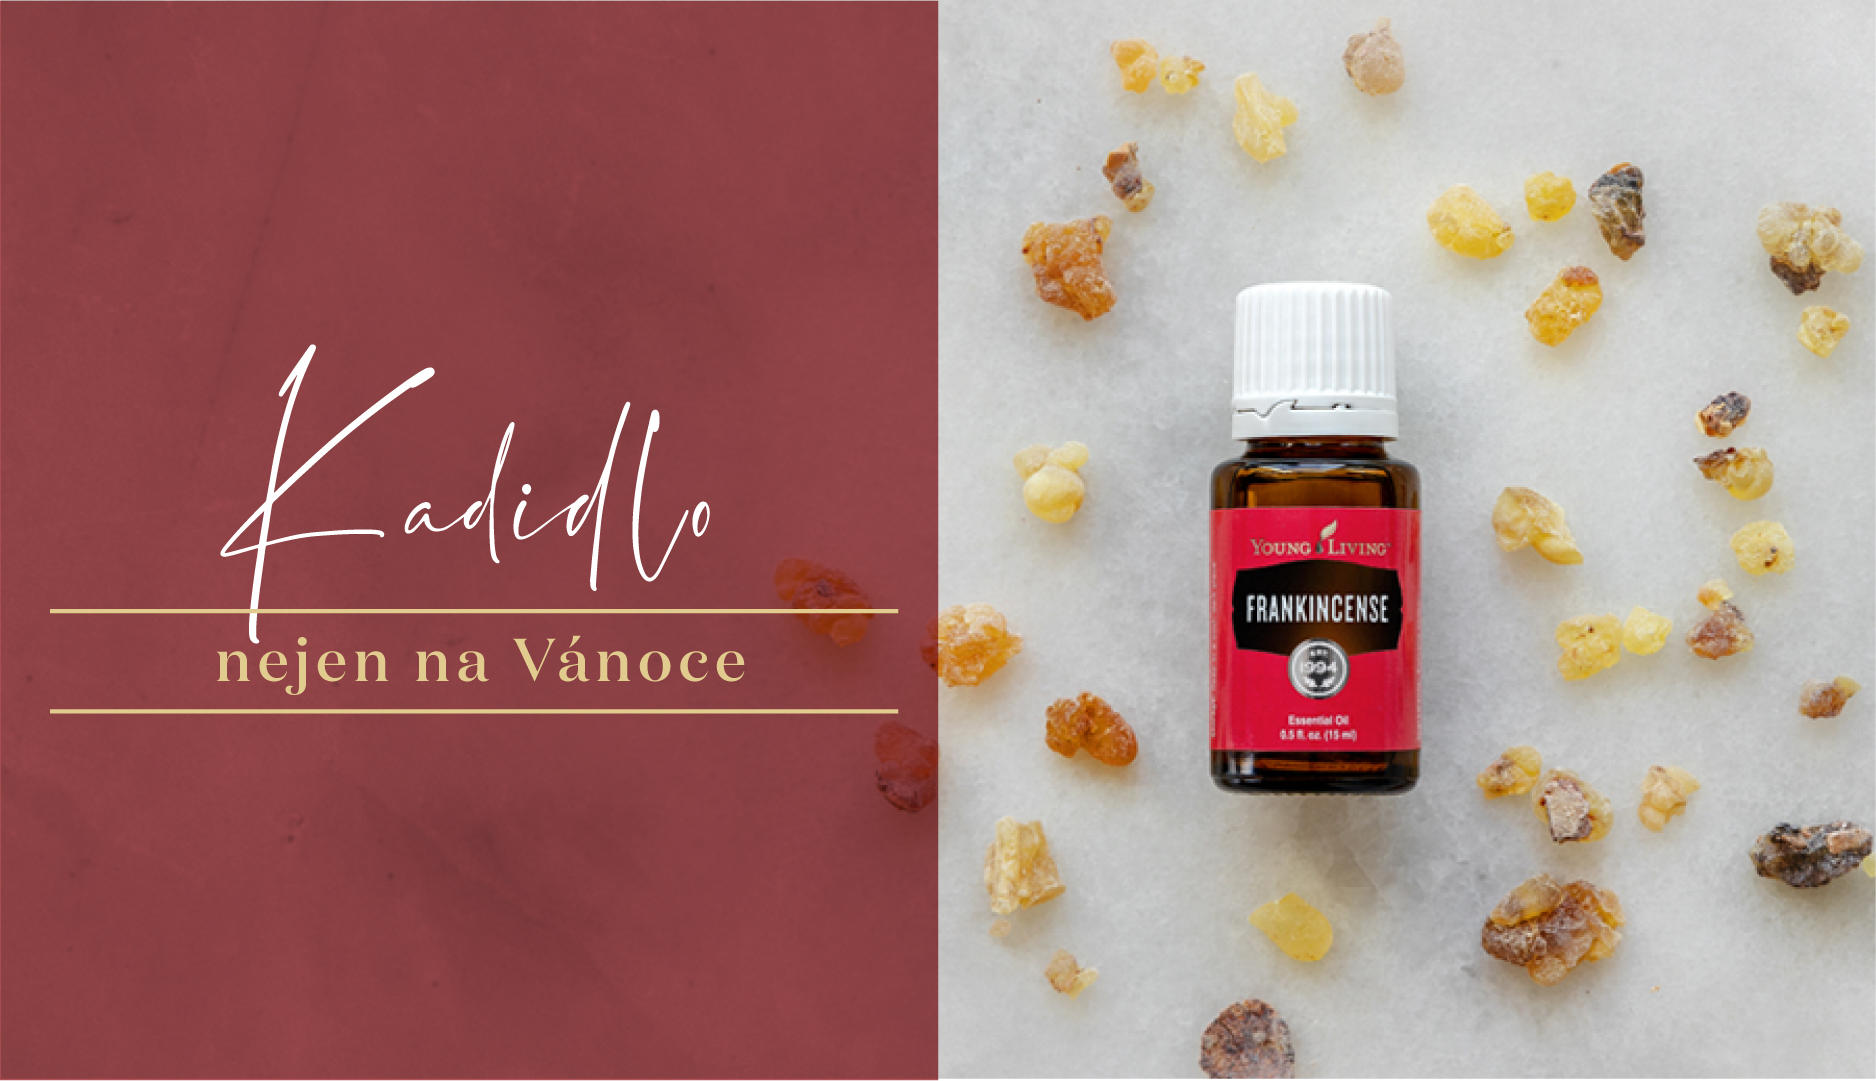 Co je olej Frankincense? Olej Frankincense je balzámově vonící olej, který je známý tím, že již tisíce let podporuje duchovní harmonii. Klikněte zde, abyste se dozvěděli více.